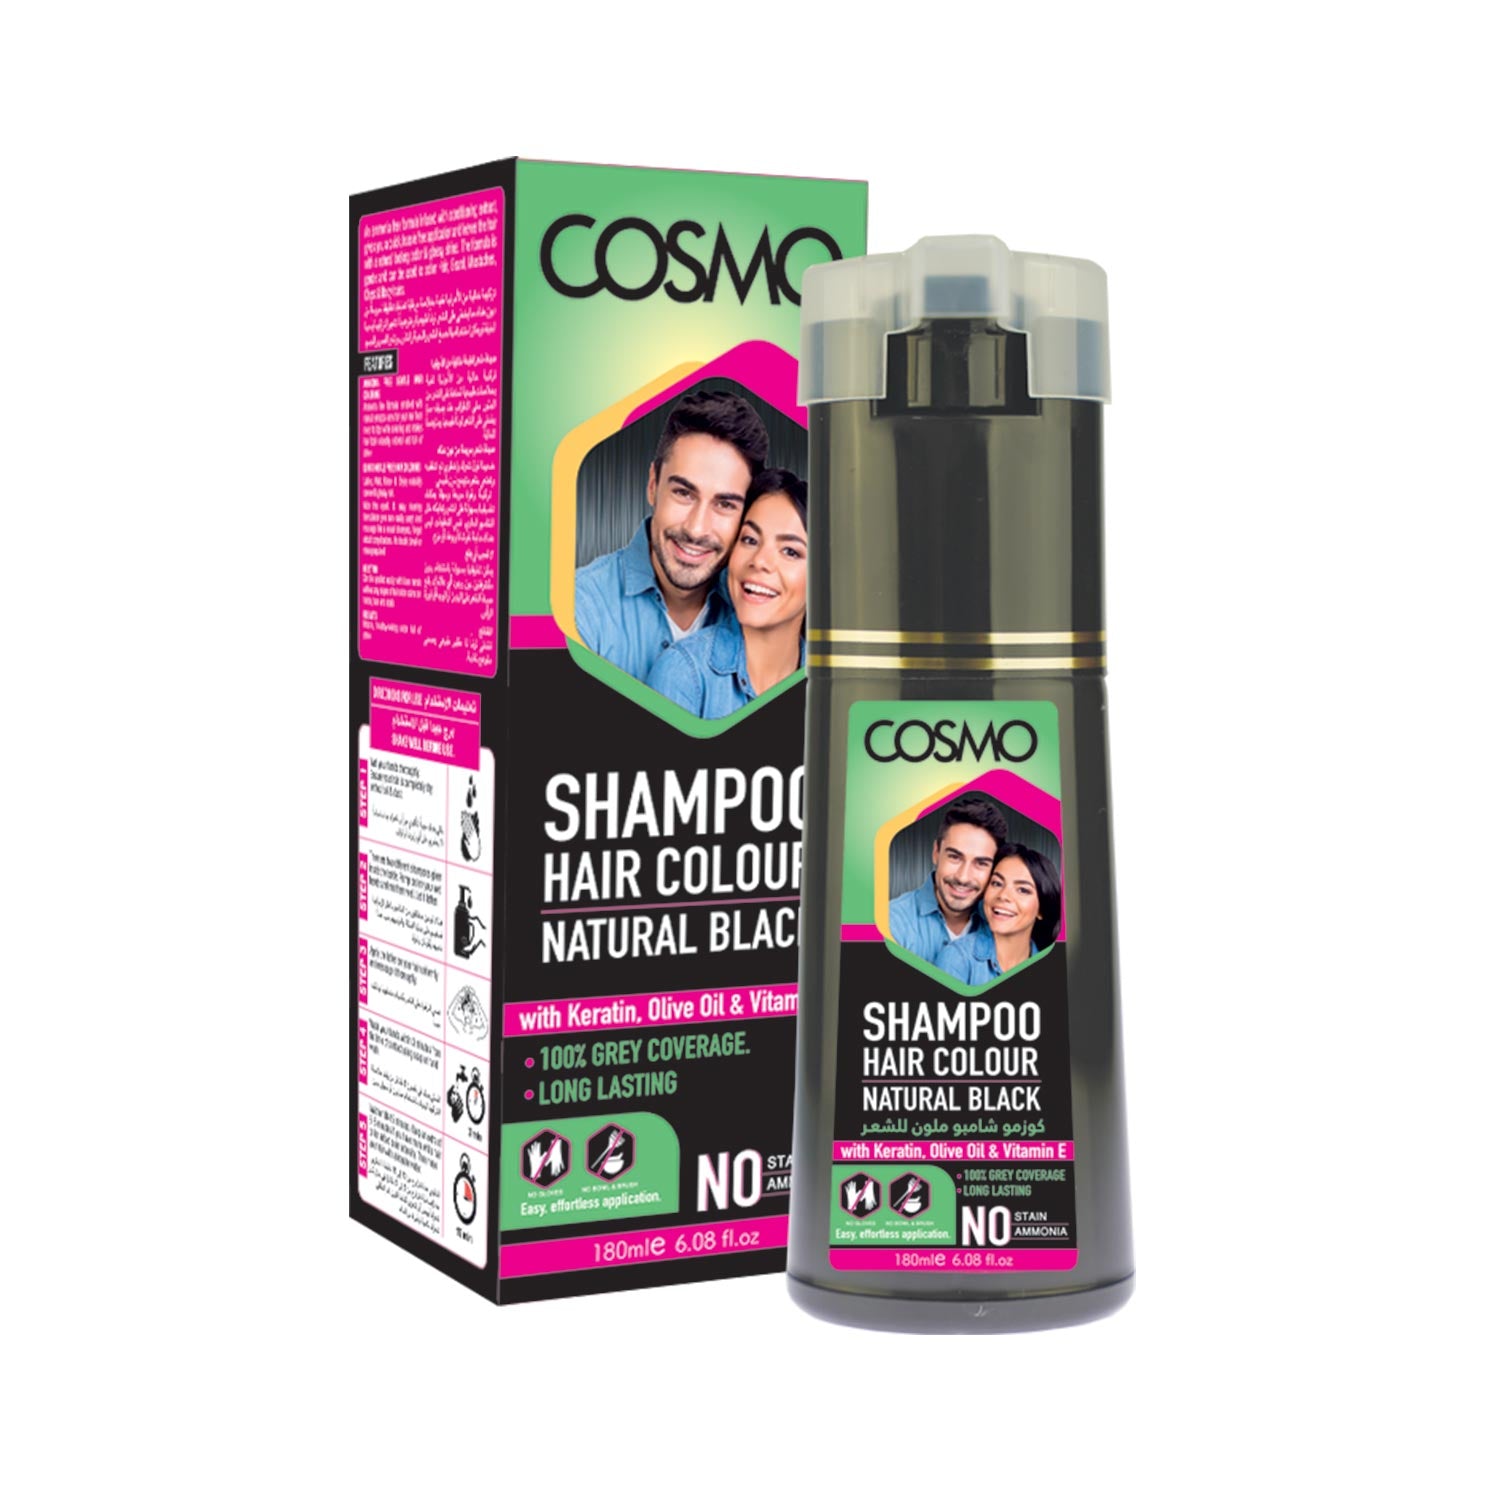 Streax Natural Black Shampoo Hair Colour For Men And Women 15 Ml Pack Of  10  JioMart